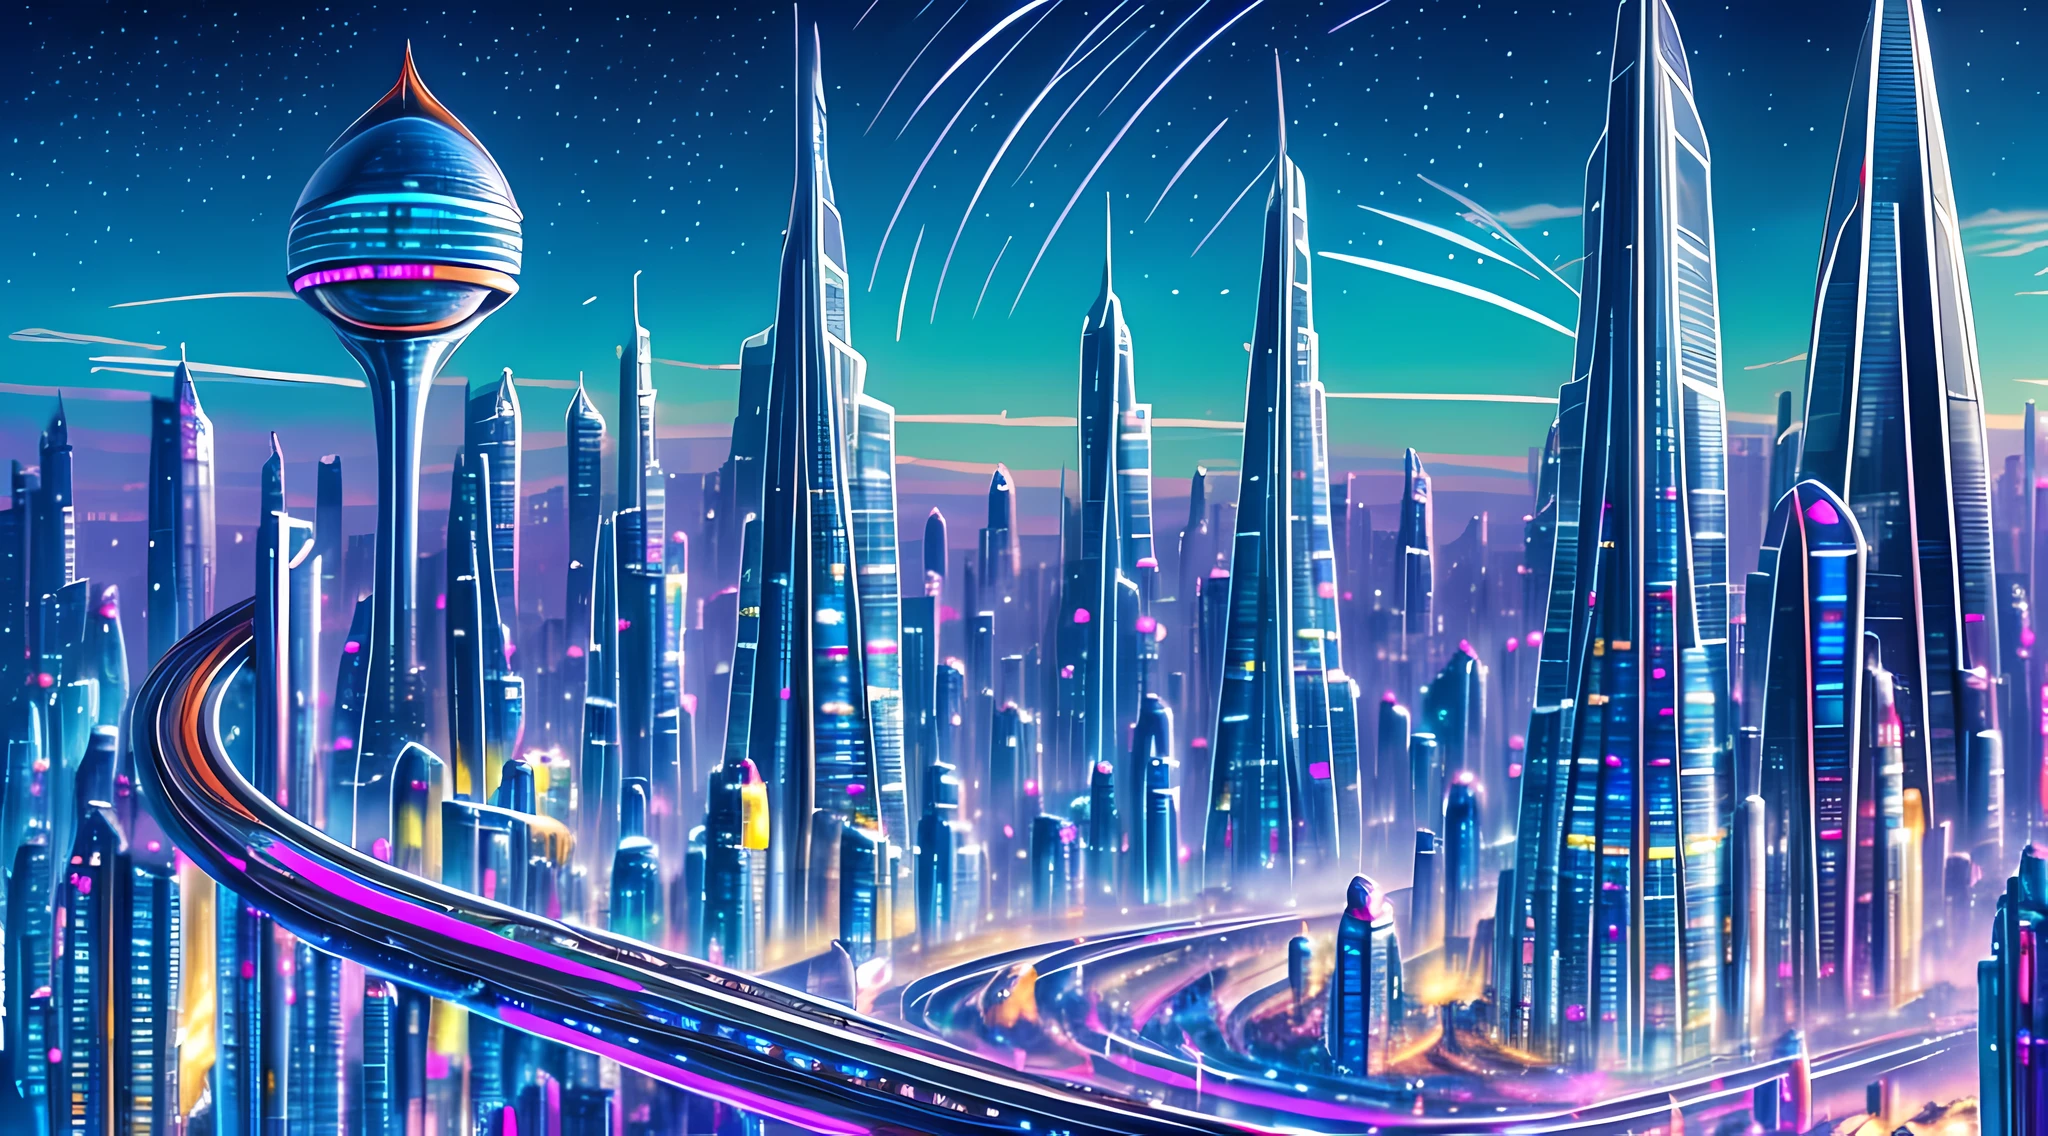 一幅描绘未来城市景观的油画, 摩天大楼和飞行器占据了整个画面. 颜色鲜艳而充满活力, 带有蓝色色调, 绿色的, 紫色占据主导地位. 在前景中, 一群人走向一个巨人, 发光的金字塔.